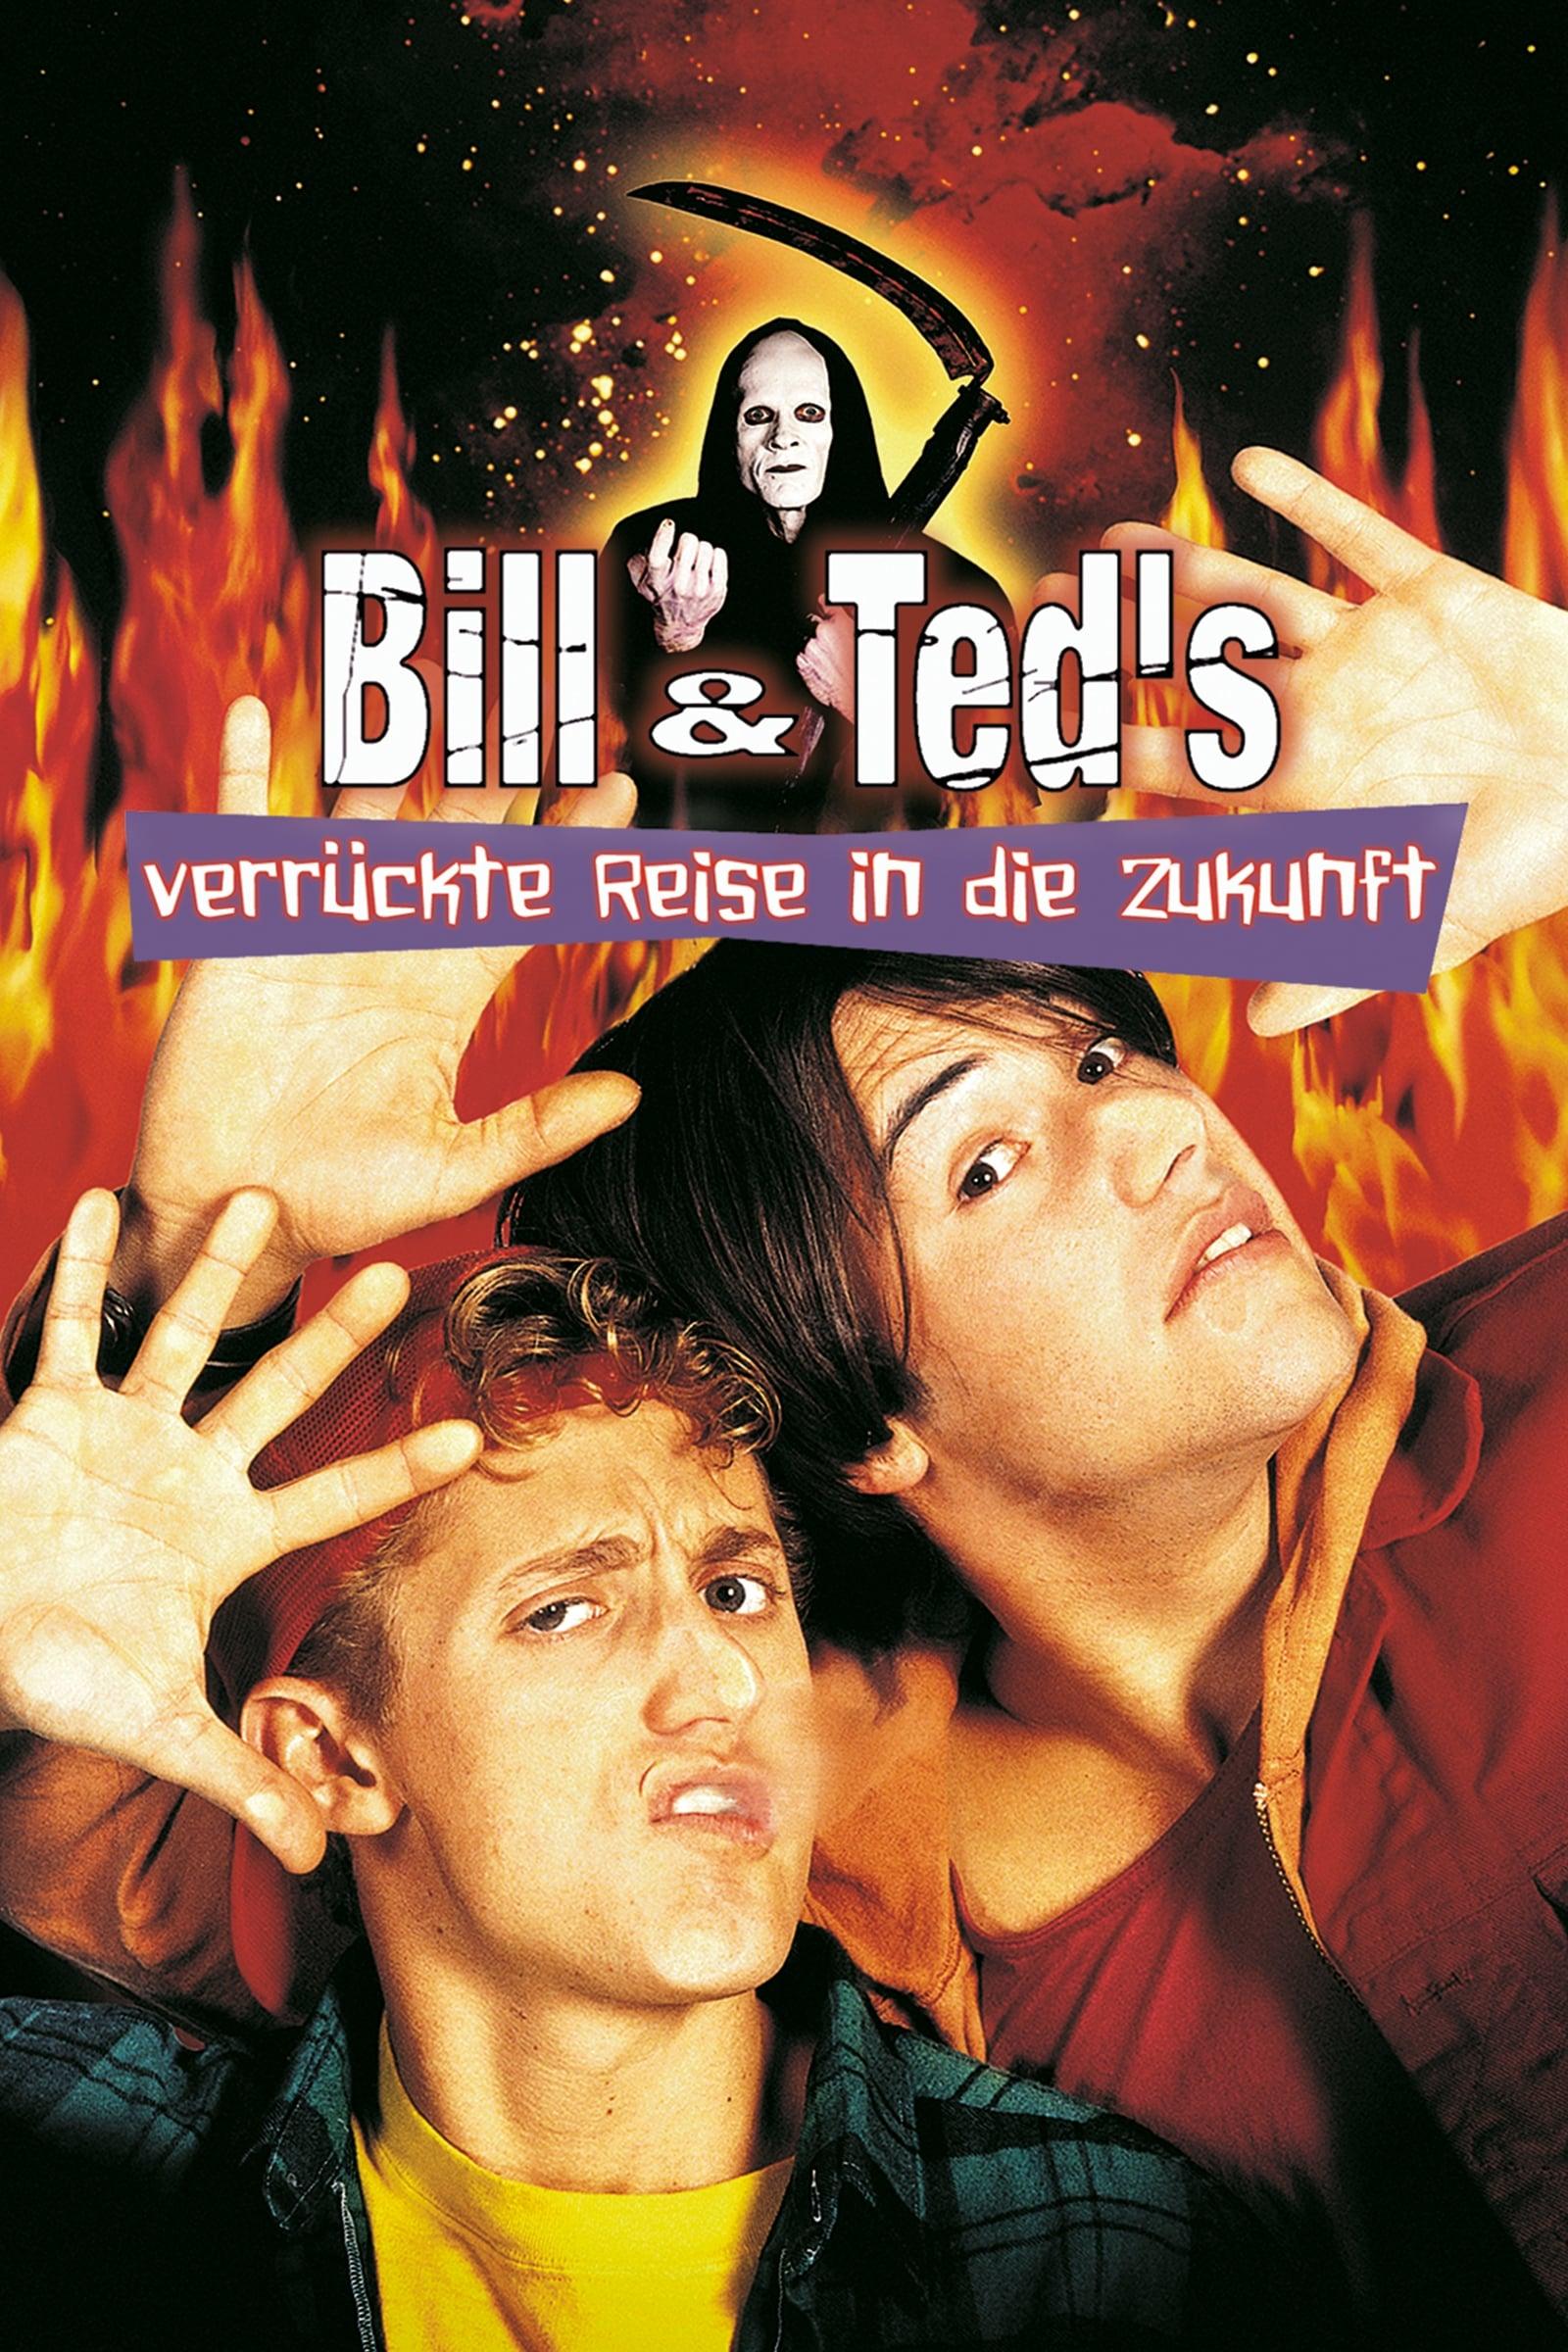 Bill & Ted's verrückte Reise in die Zukunft poster